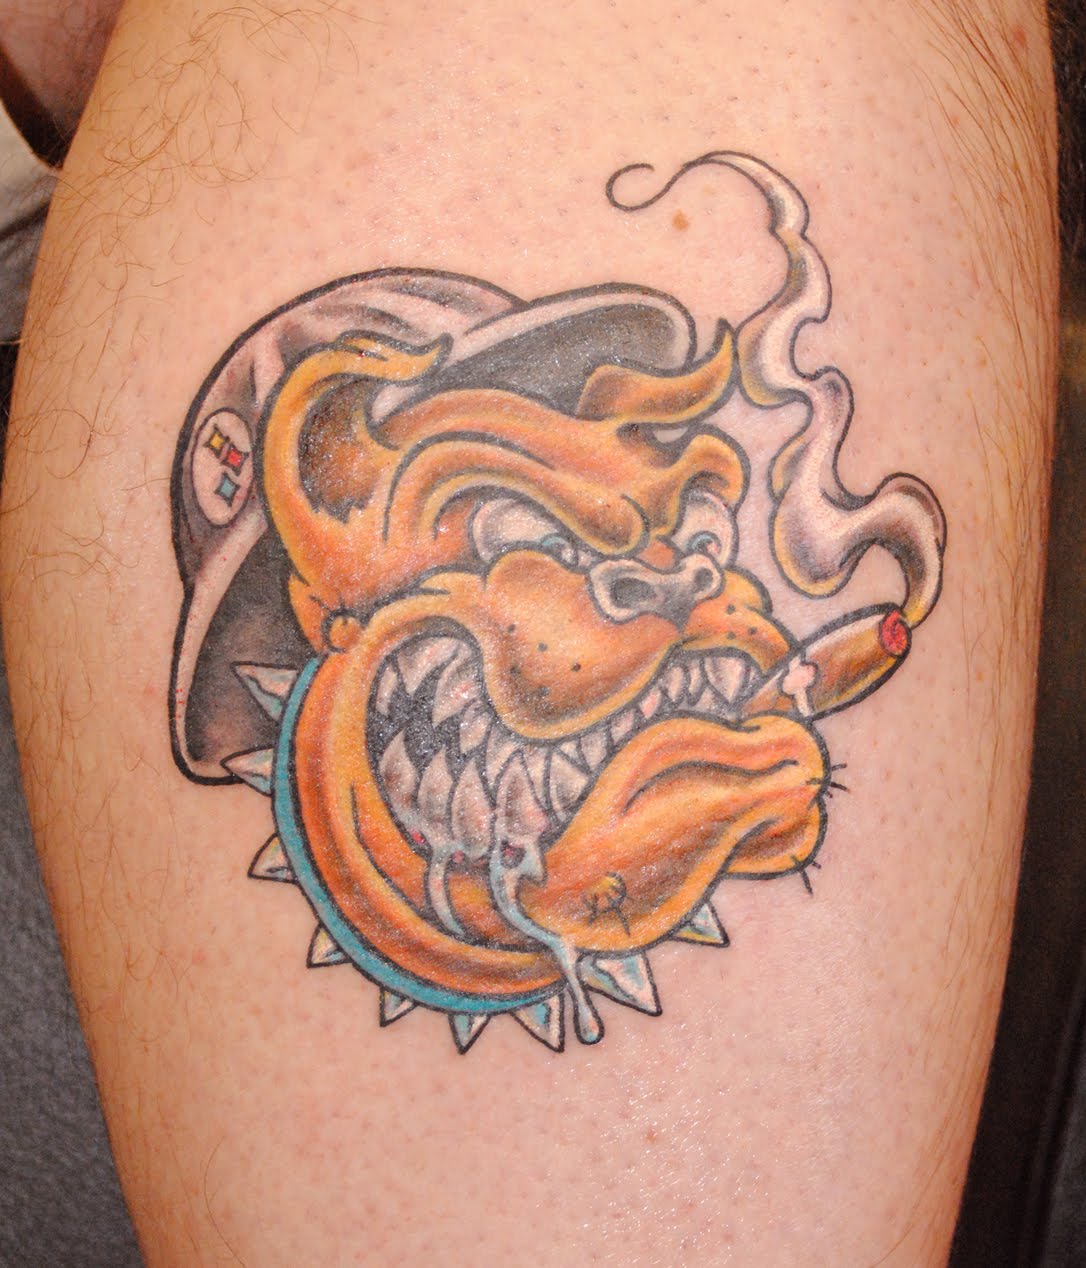 http://2.bp.blogspot.com/_tQVYfnoz5io/TJKSkkBnZzI/AAAAAAAABSk/J6BkrAwQgm0/s1600/bulldog+steelworker+tattoo+blog.jpg